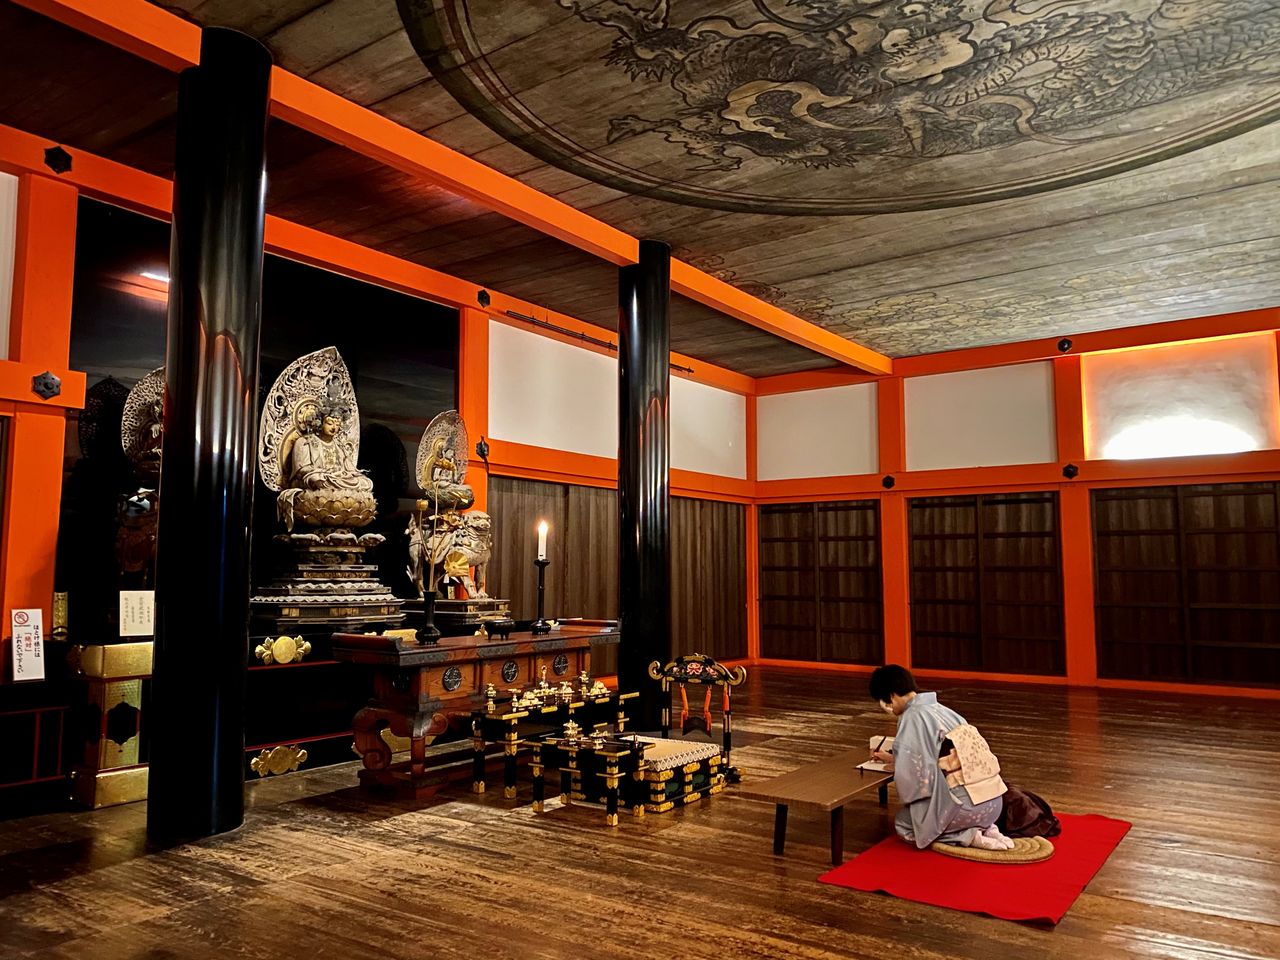 El salón de los sutras que se encuentra junto a la pagoda de tres pisos fue reconstruido en 1633. A mediados del periodo Heian (794-1185), albergaba todos los sutras budistas y prosperaba como sala de conferencias donde se reunían monjes eruditos de todo Japón. Es un importante bien cultural de Japón. (Fotografía de Funada Yukio)